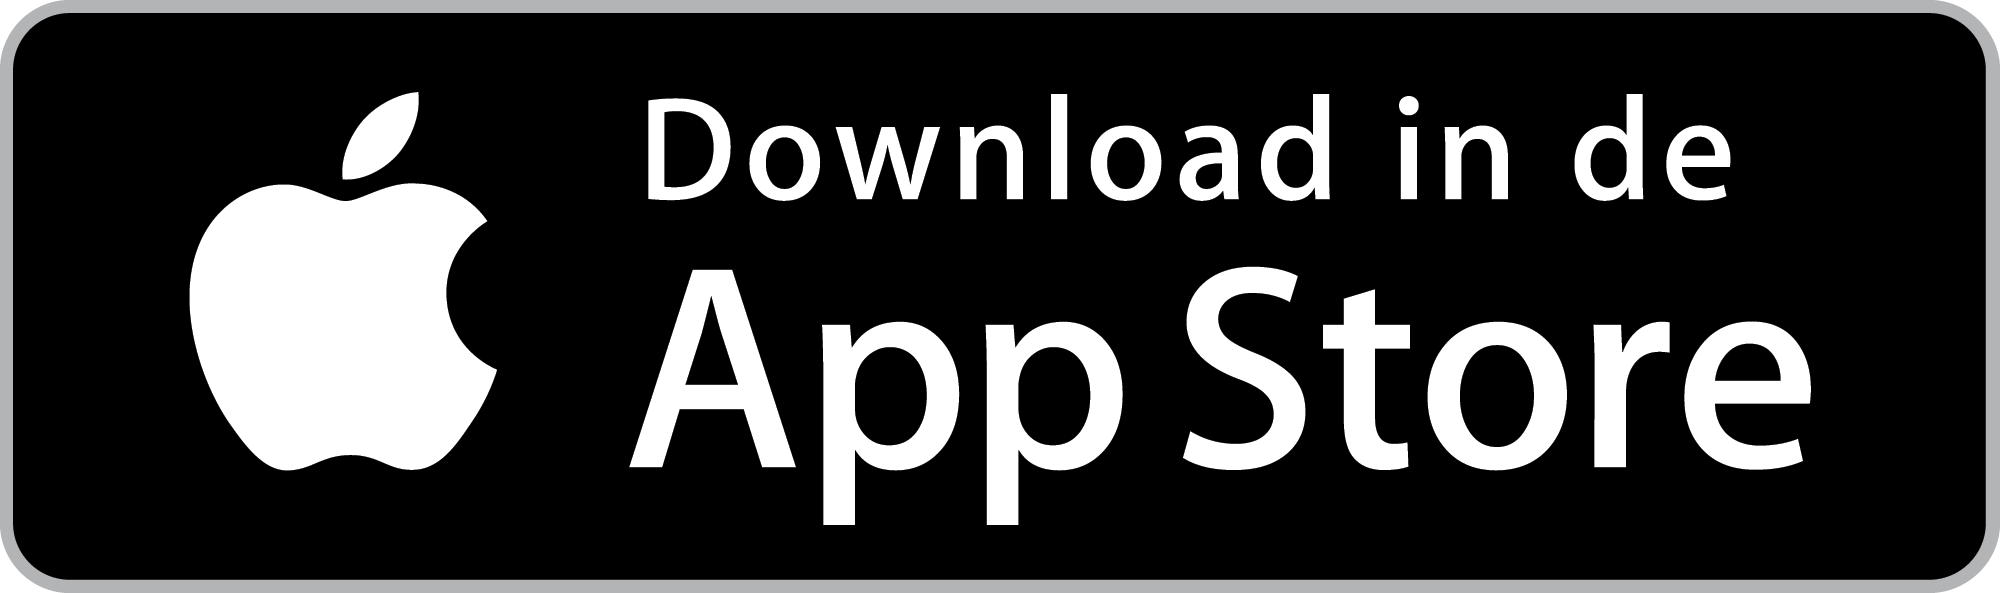 De App store download knop